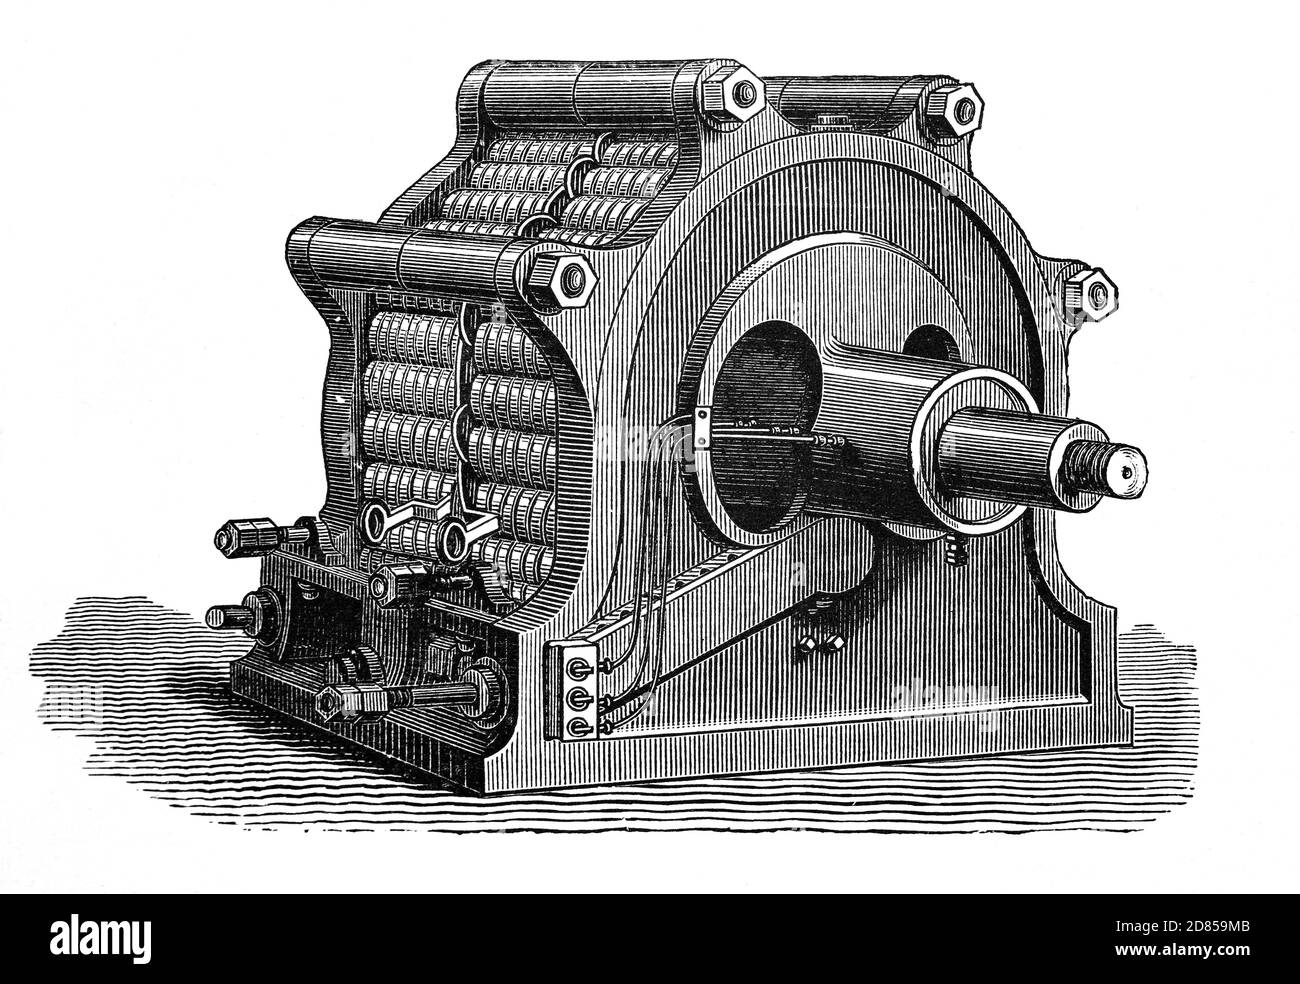 Un'illustrazione del 19 ° secolo della dinamo Ferranti-Thompson, un generatore fa l'elettricità CA (corrente alternata CA) utilizzando l'elettromagnetismo. Quando l'armatura a zigzag inventata da Liverpoool, nata ​Sebastian de Ferranti (1864-1930), fu combinata con la dinamo di Sir William Thomson (Lord Kelvin), la macchina fornì cinque volte la produzione di qualsiasi macchina precedente della sua dimensione. Foto Stock